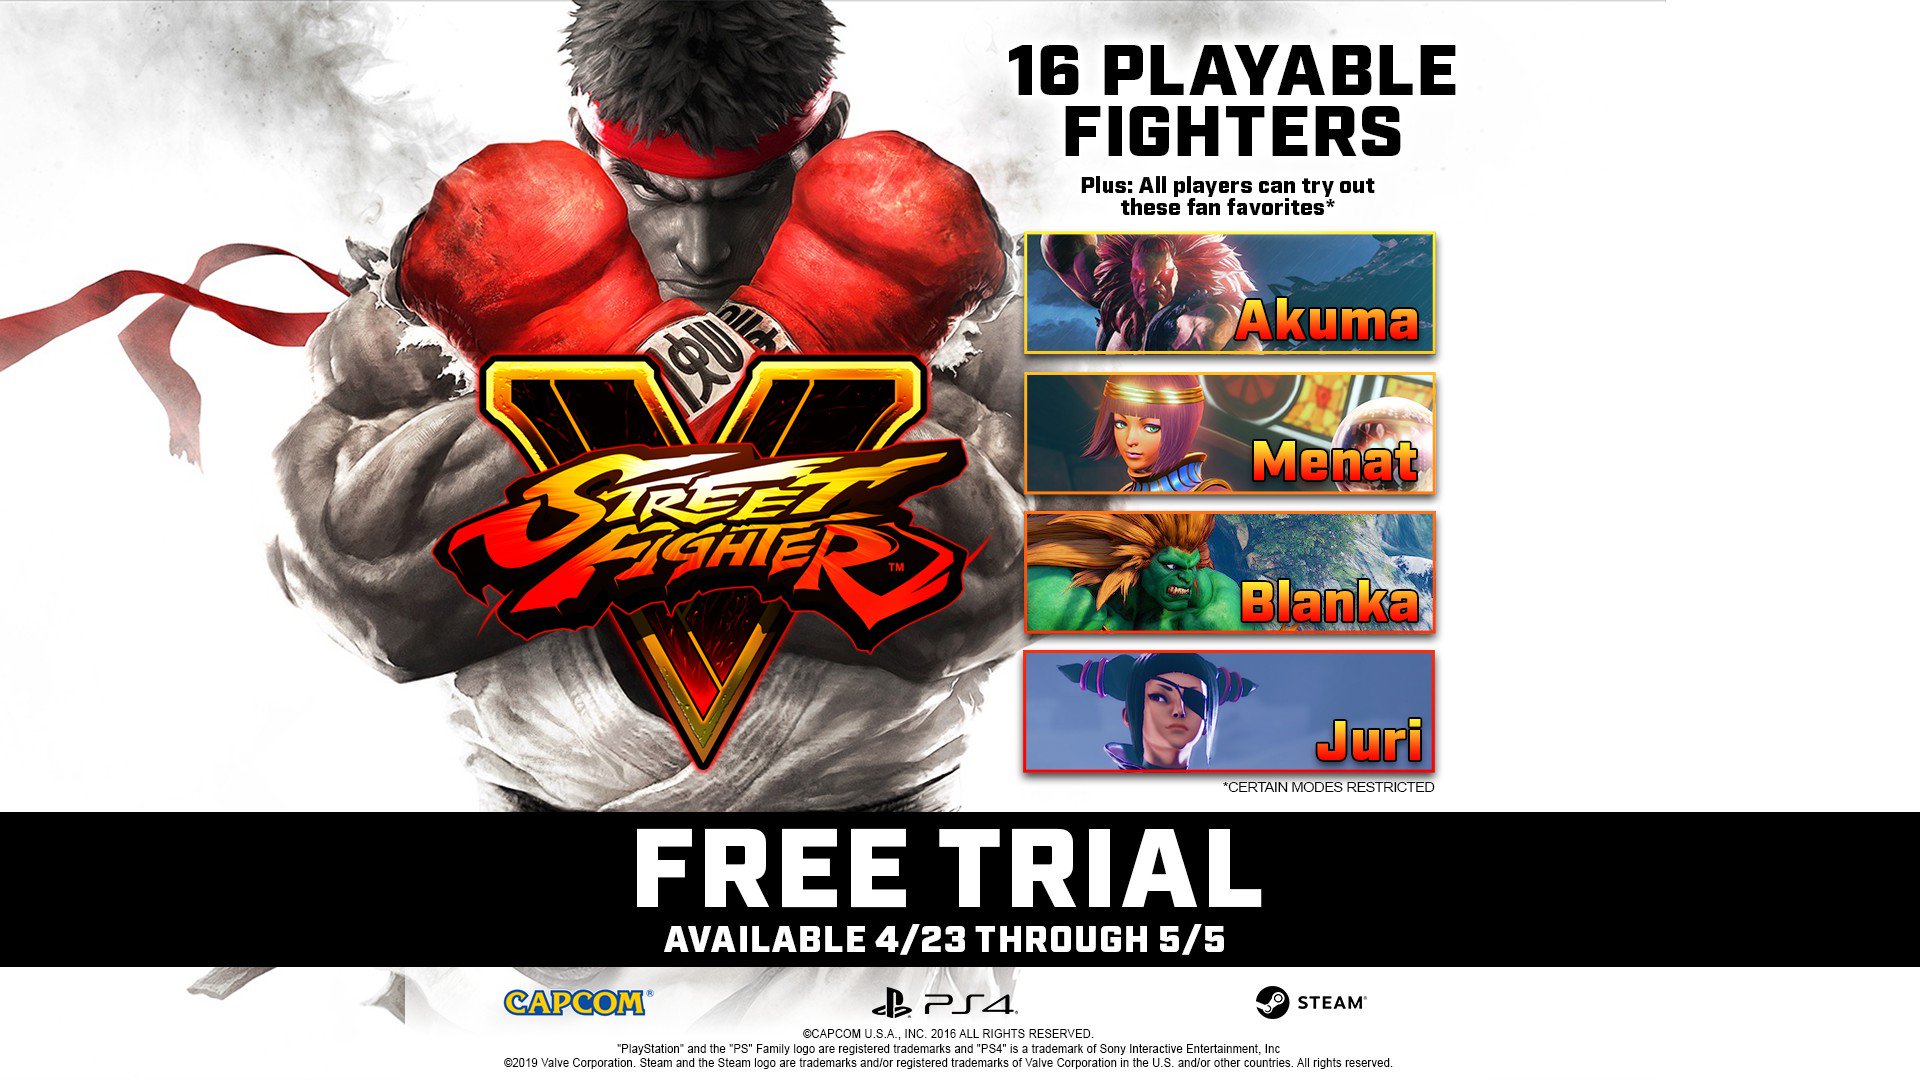 Próxima versão beta de Street Fighter V terá suporte ao cross play -  GameBlast